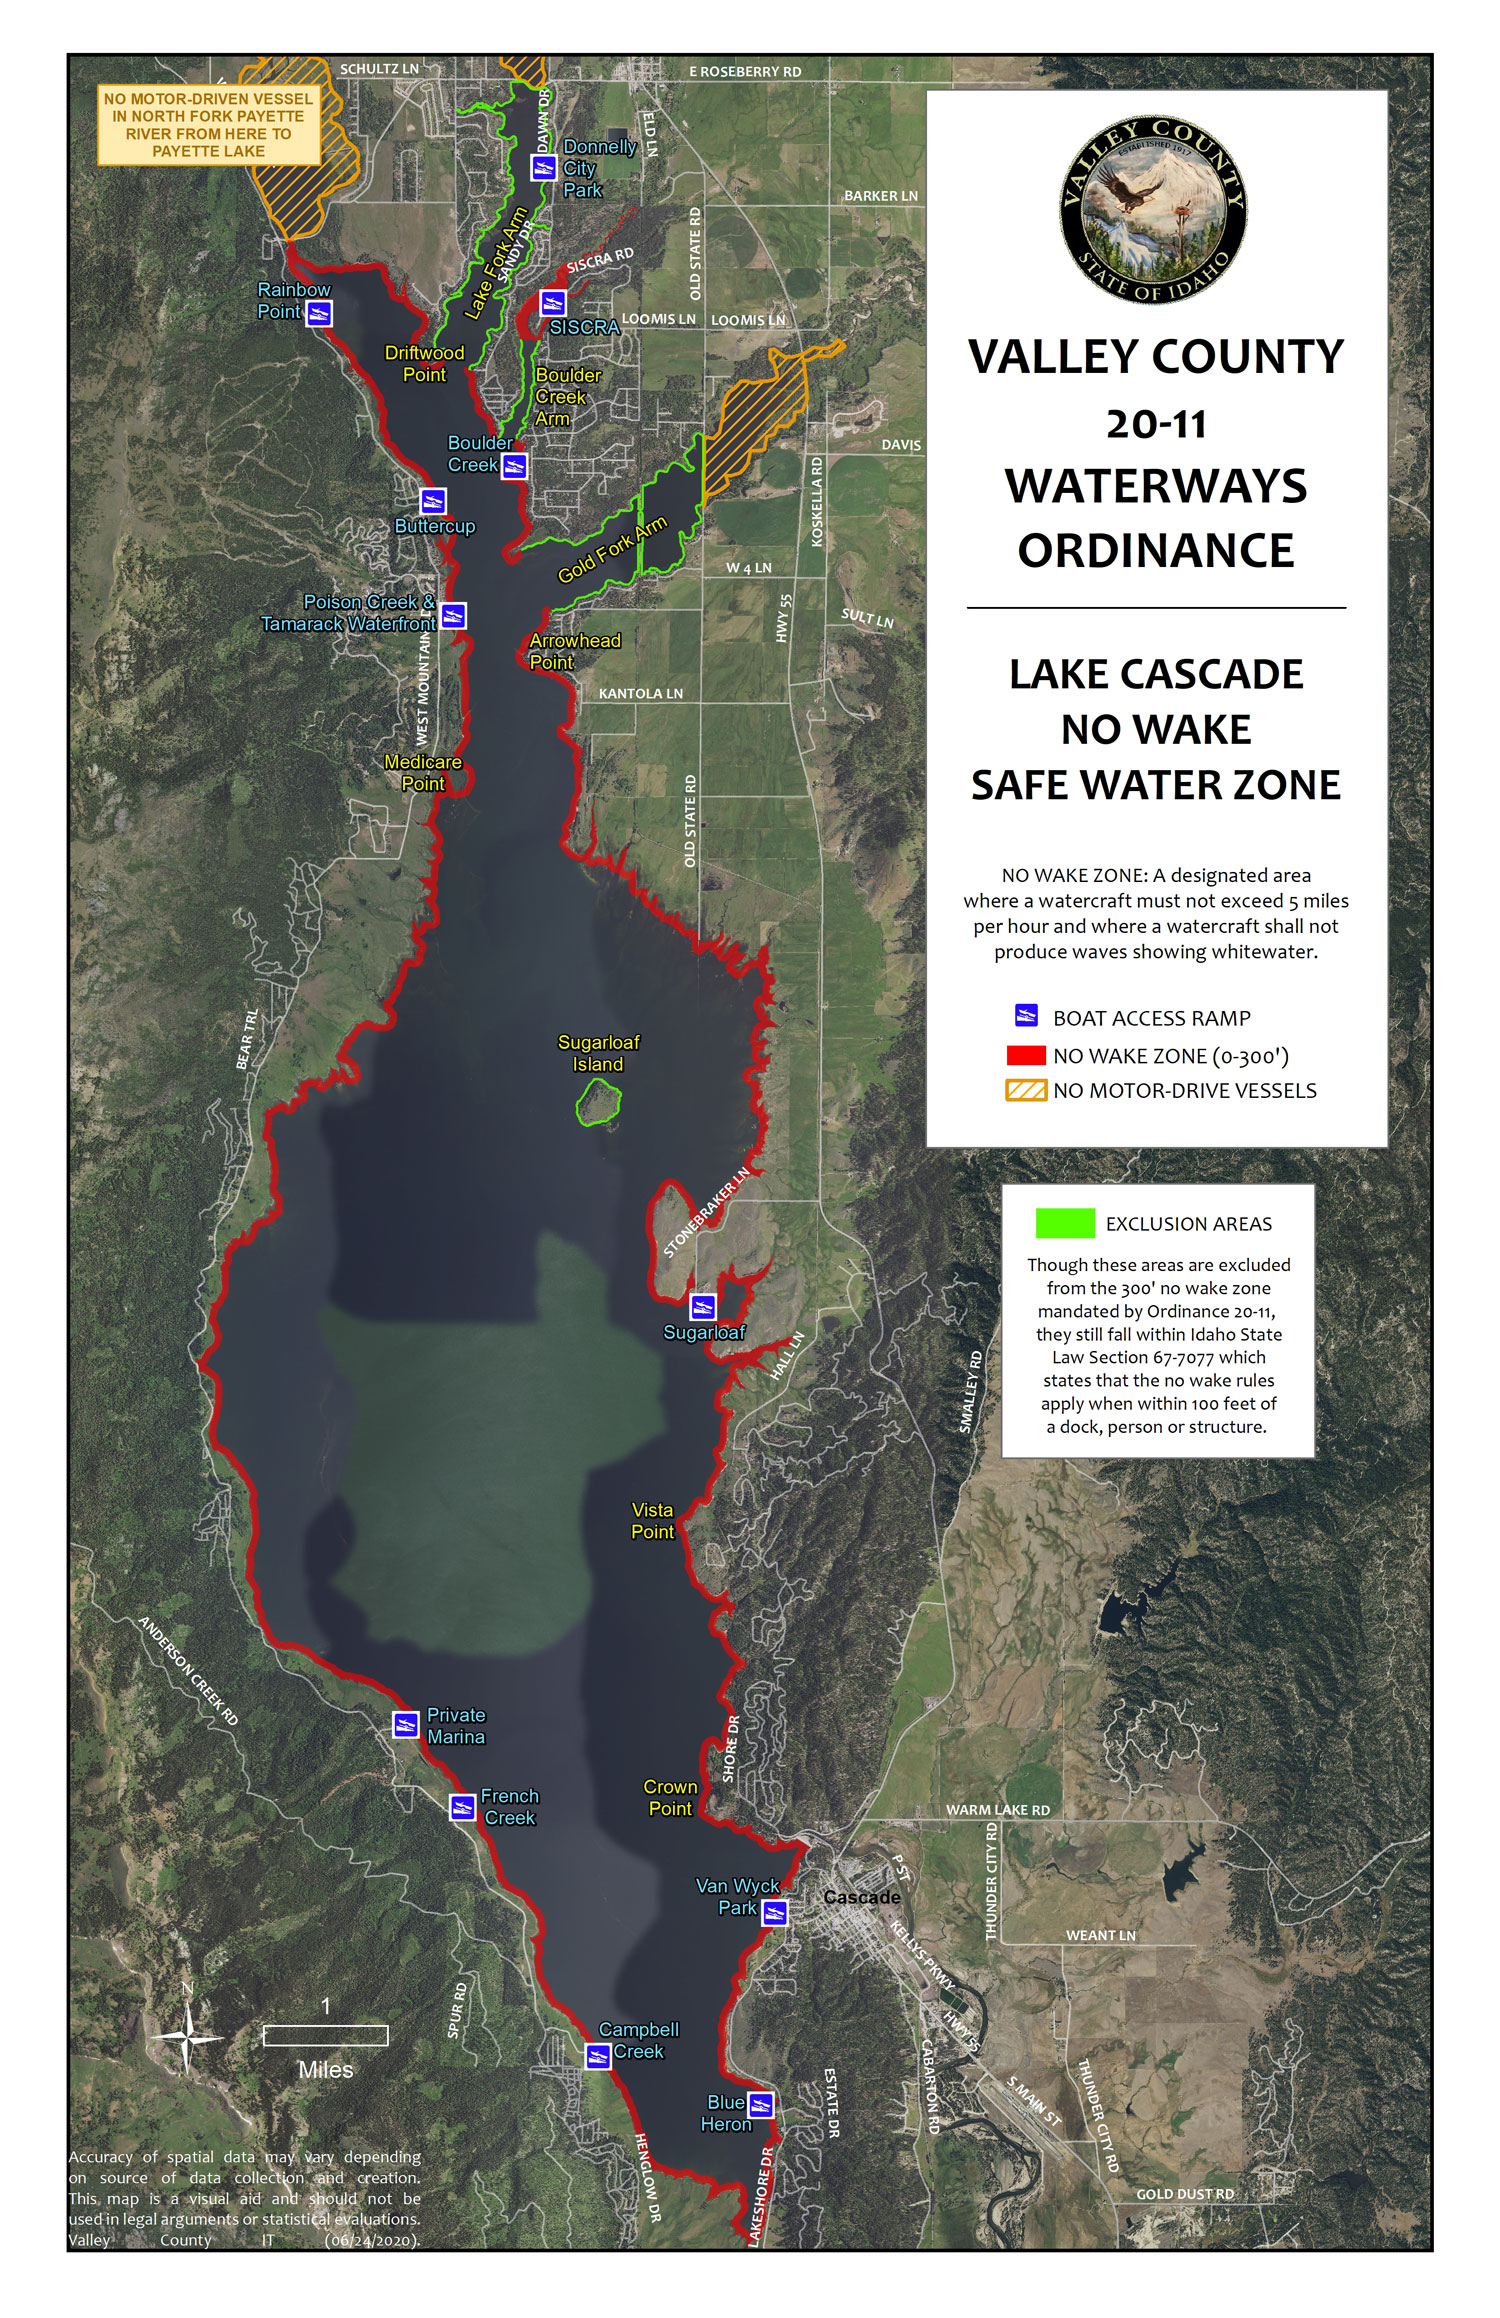 Lake Cascade Recreation